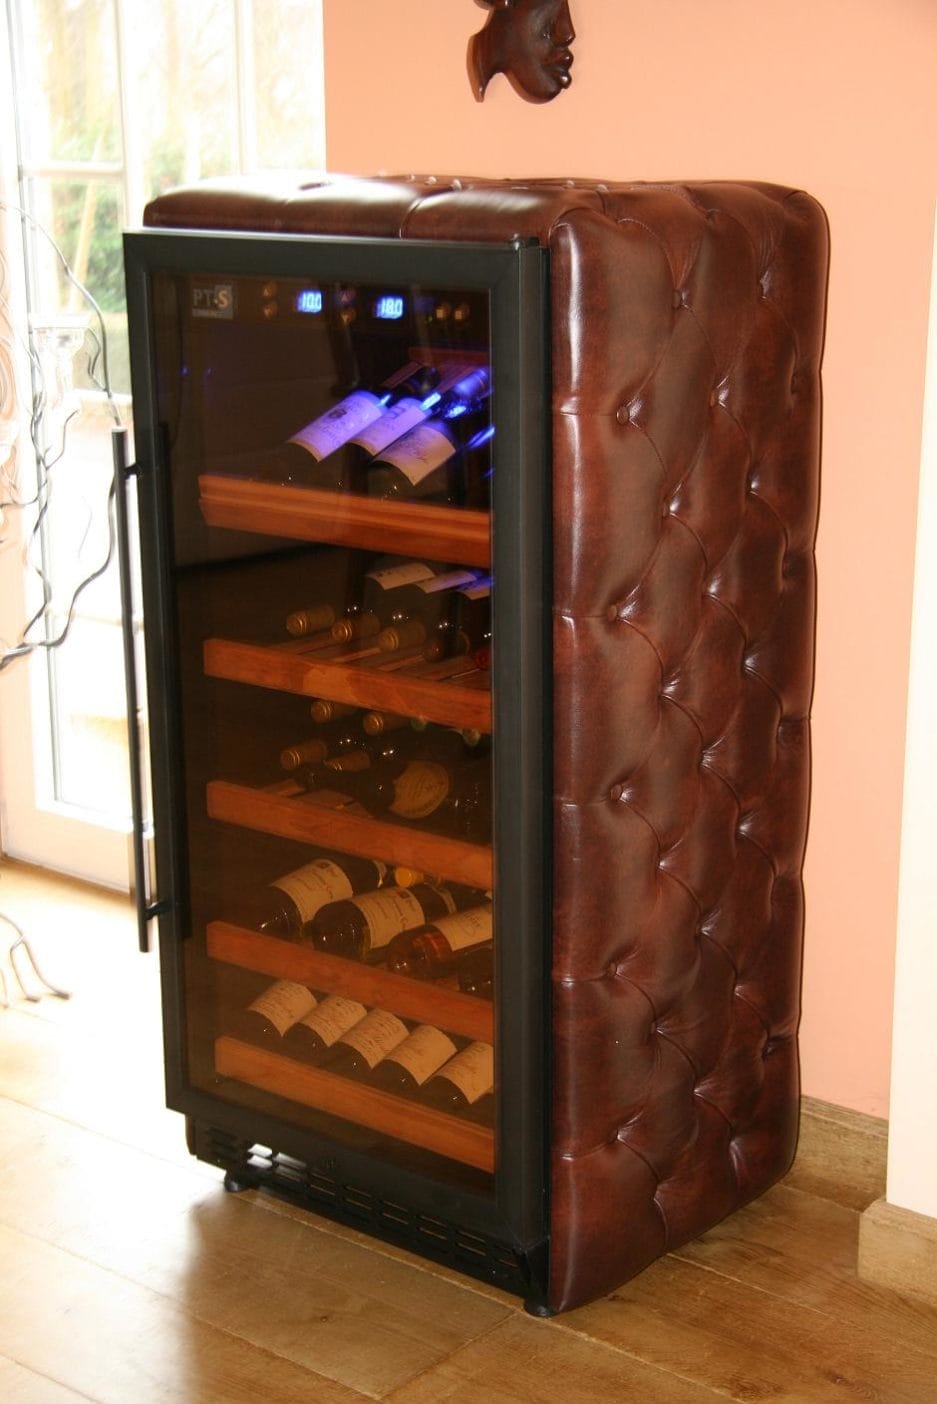 Ein mit braunem Leder umwickeltes Leder mit Steppmuster, mit einer offenen Glastür, die mehrere Regale voller Weinflaschen zeigt.